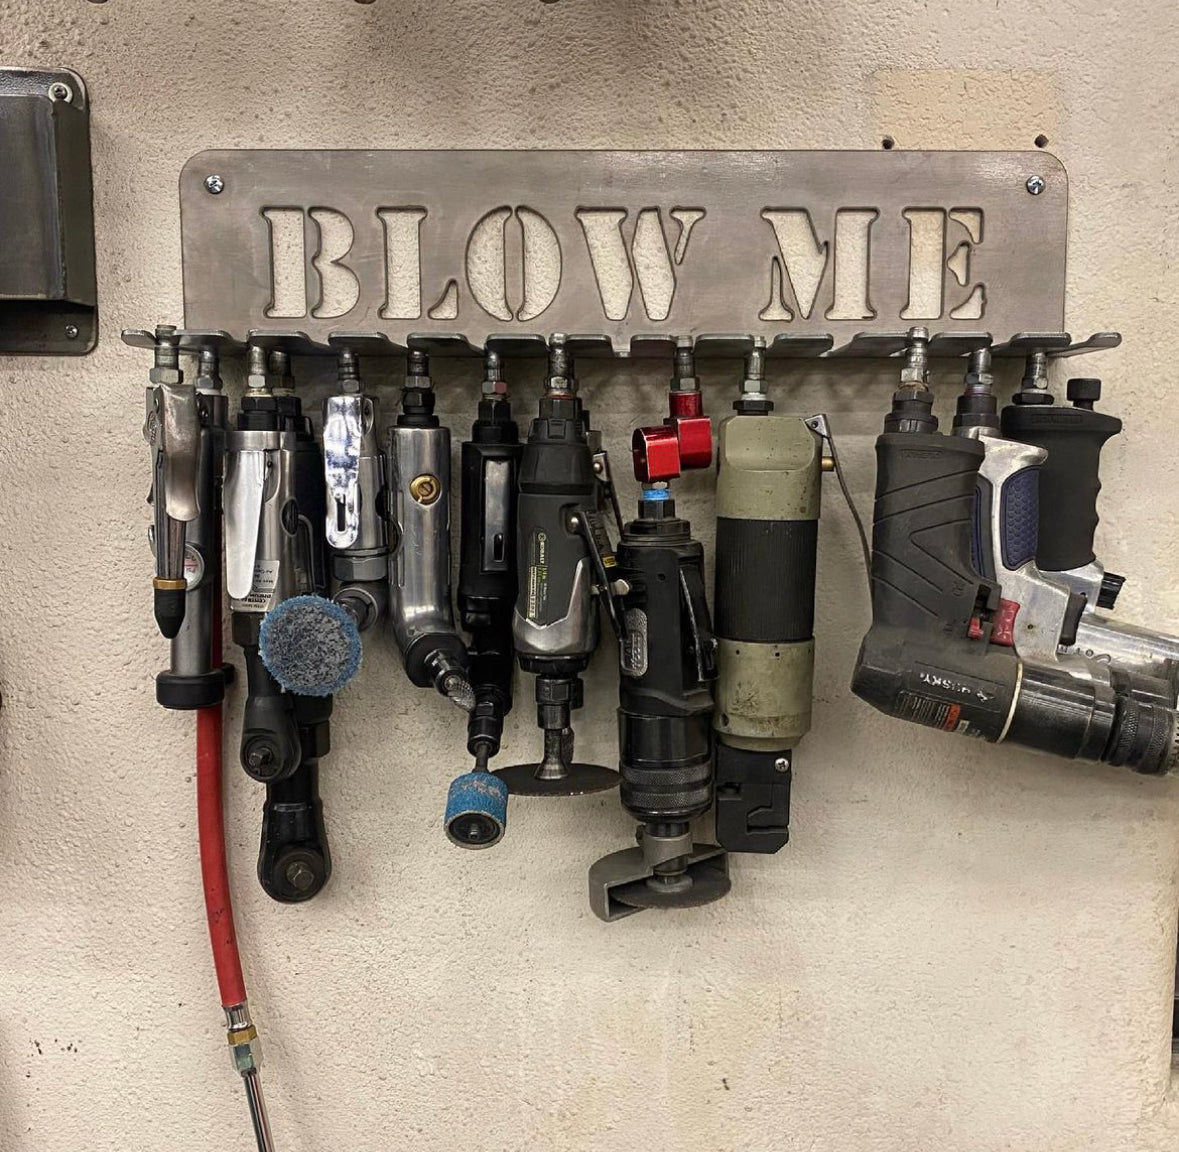 "BLOW ME" Air Tool Rack